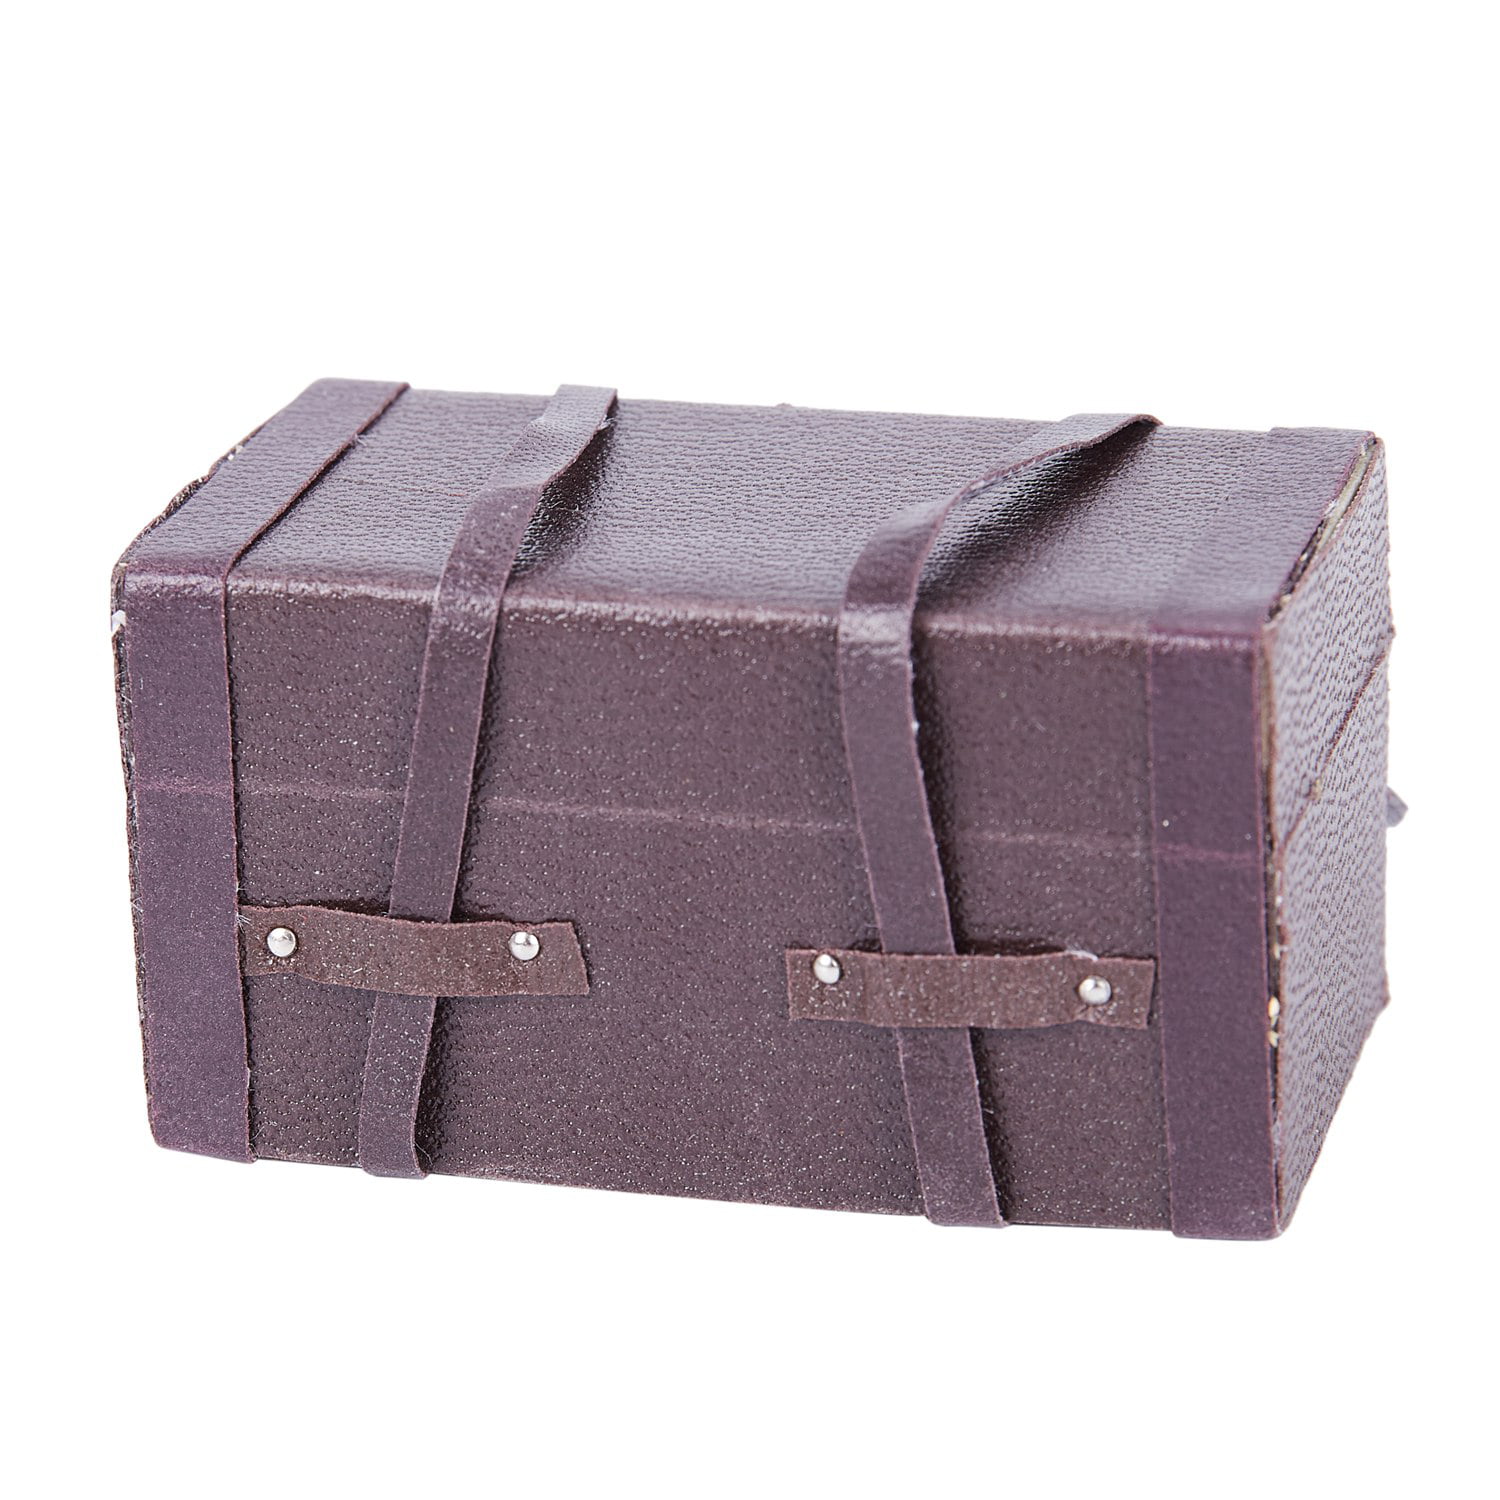 1:12 Dollhouse Miniature Vintage Leather Wood Suitcase Mini Luggage Box 